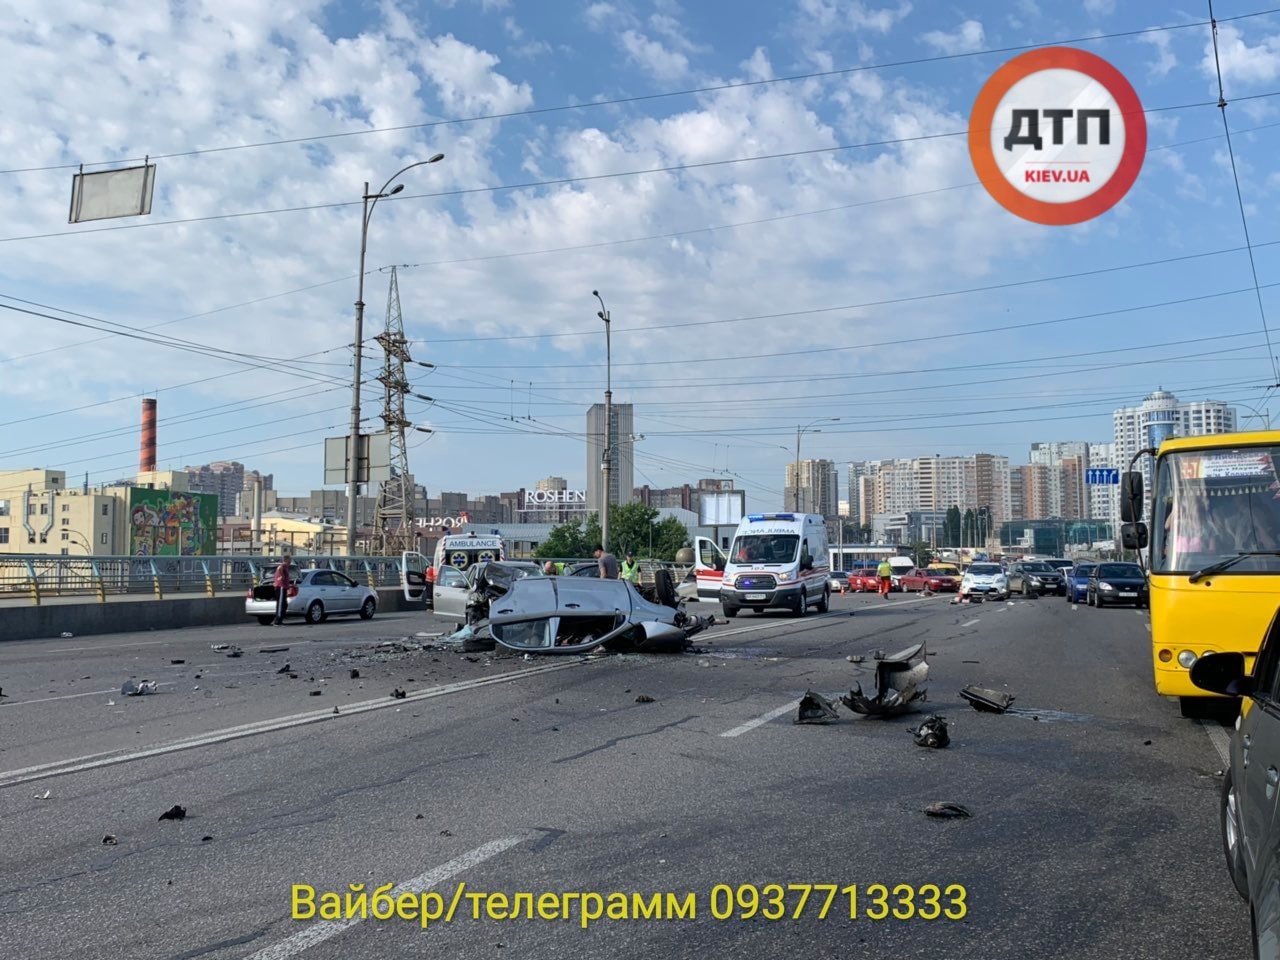 У центрального автовокзала в Киеве легковой автомобиль разорвало и опрокинуло в результате смертельного ДТП (фото, видео 18+)